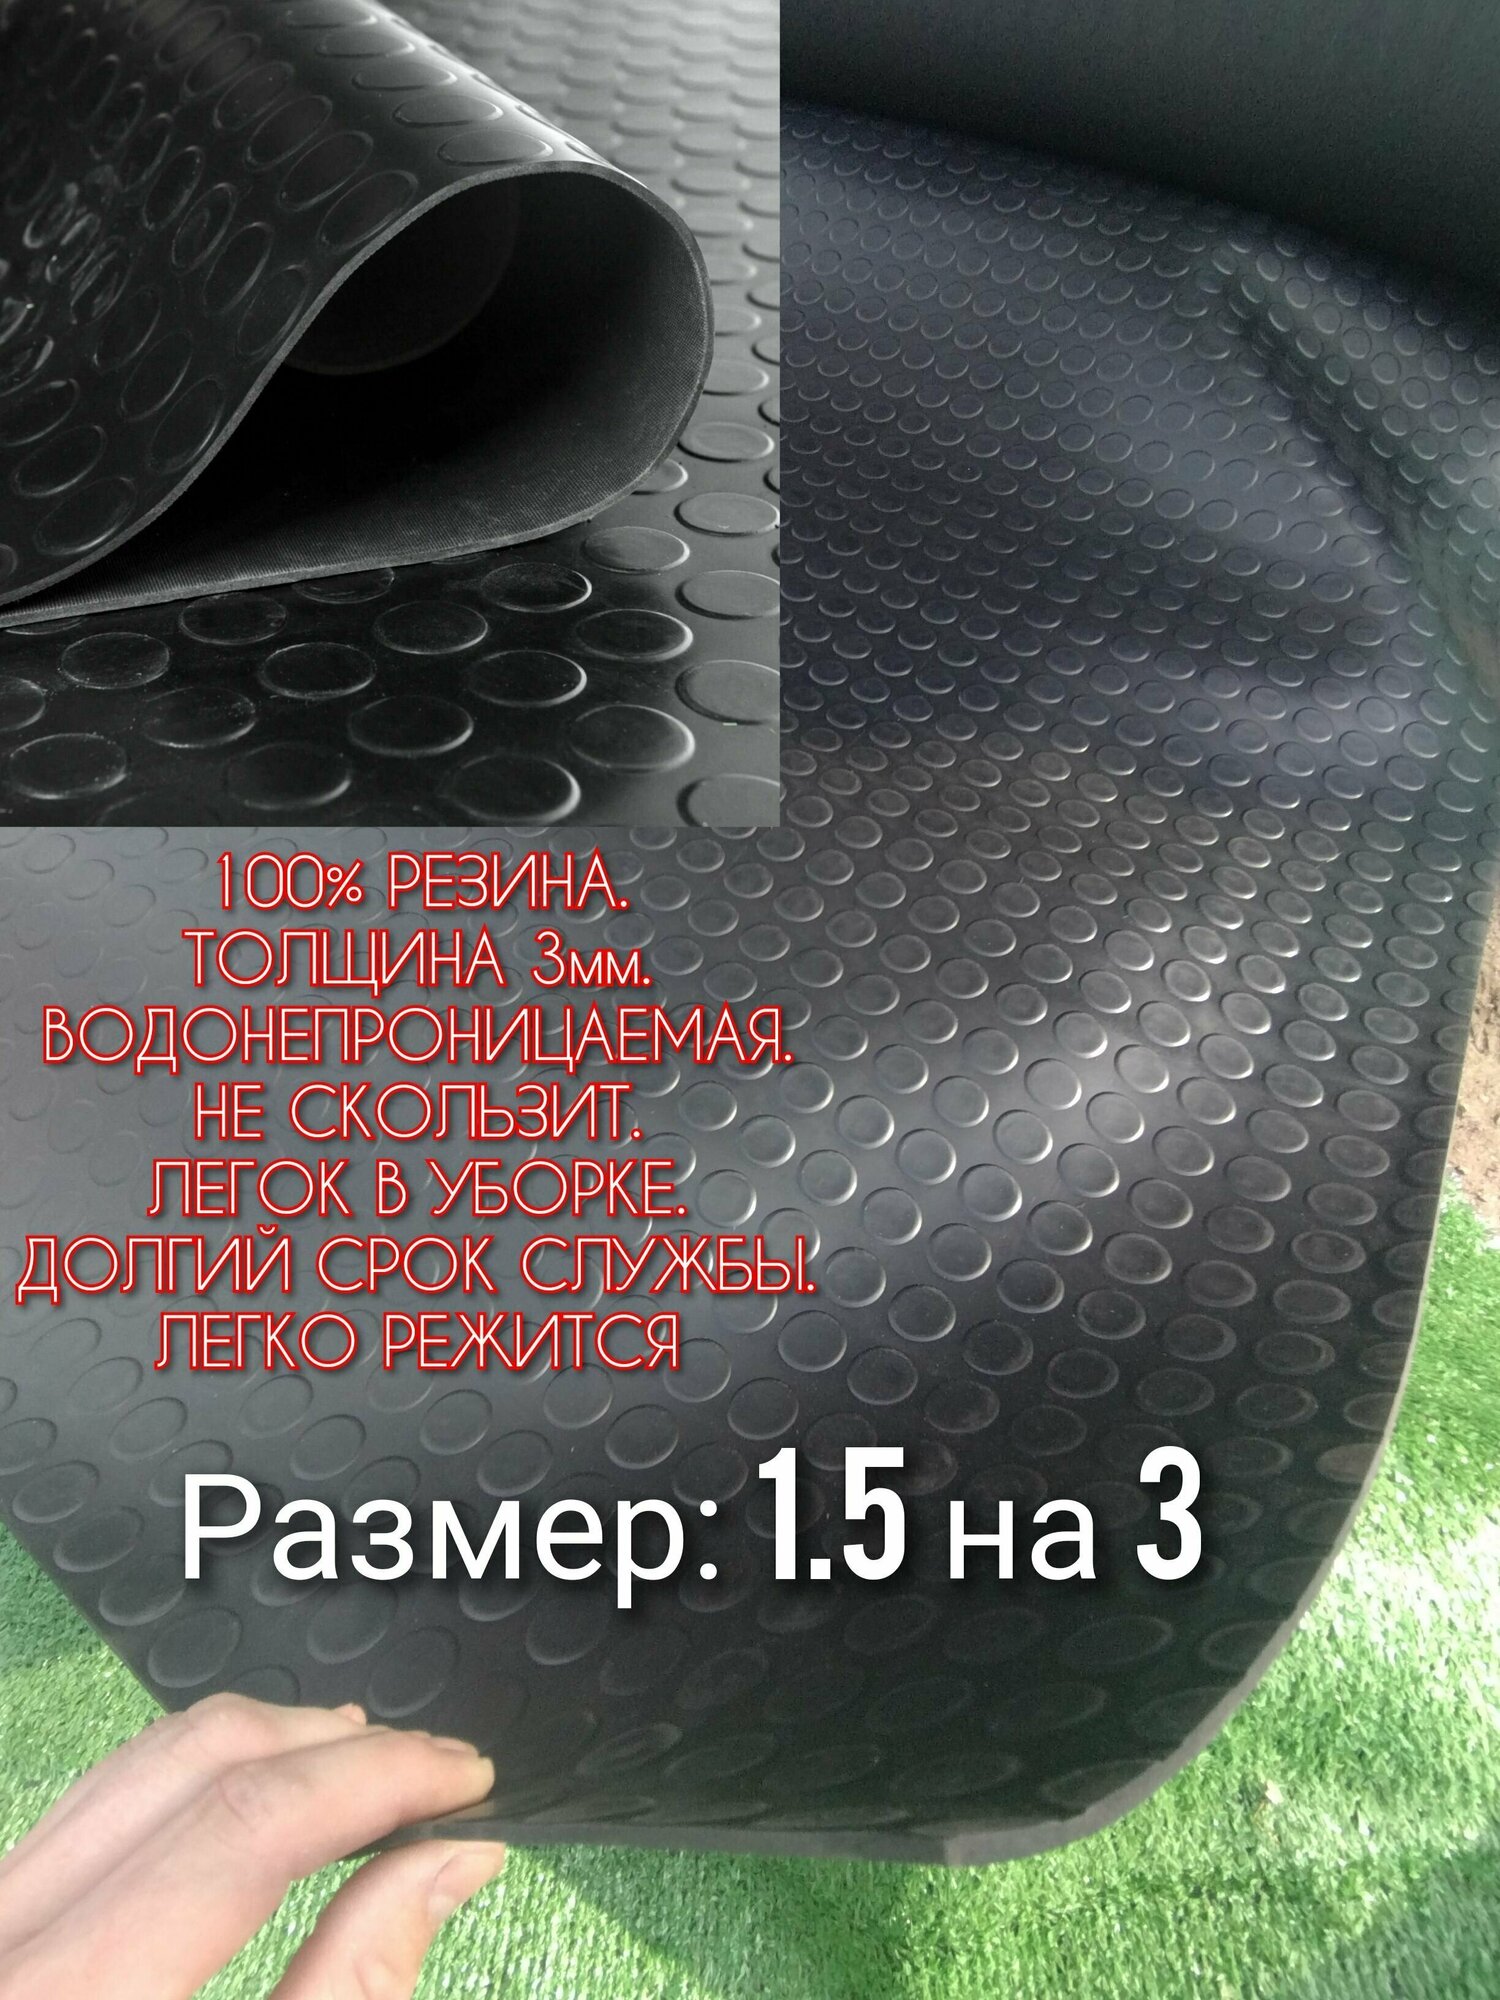 Резиновое покрытие в авто 1,5 х 3 (Монета, цвет черный) Резиновая дорожка для авто, гаража, ступень